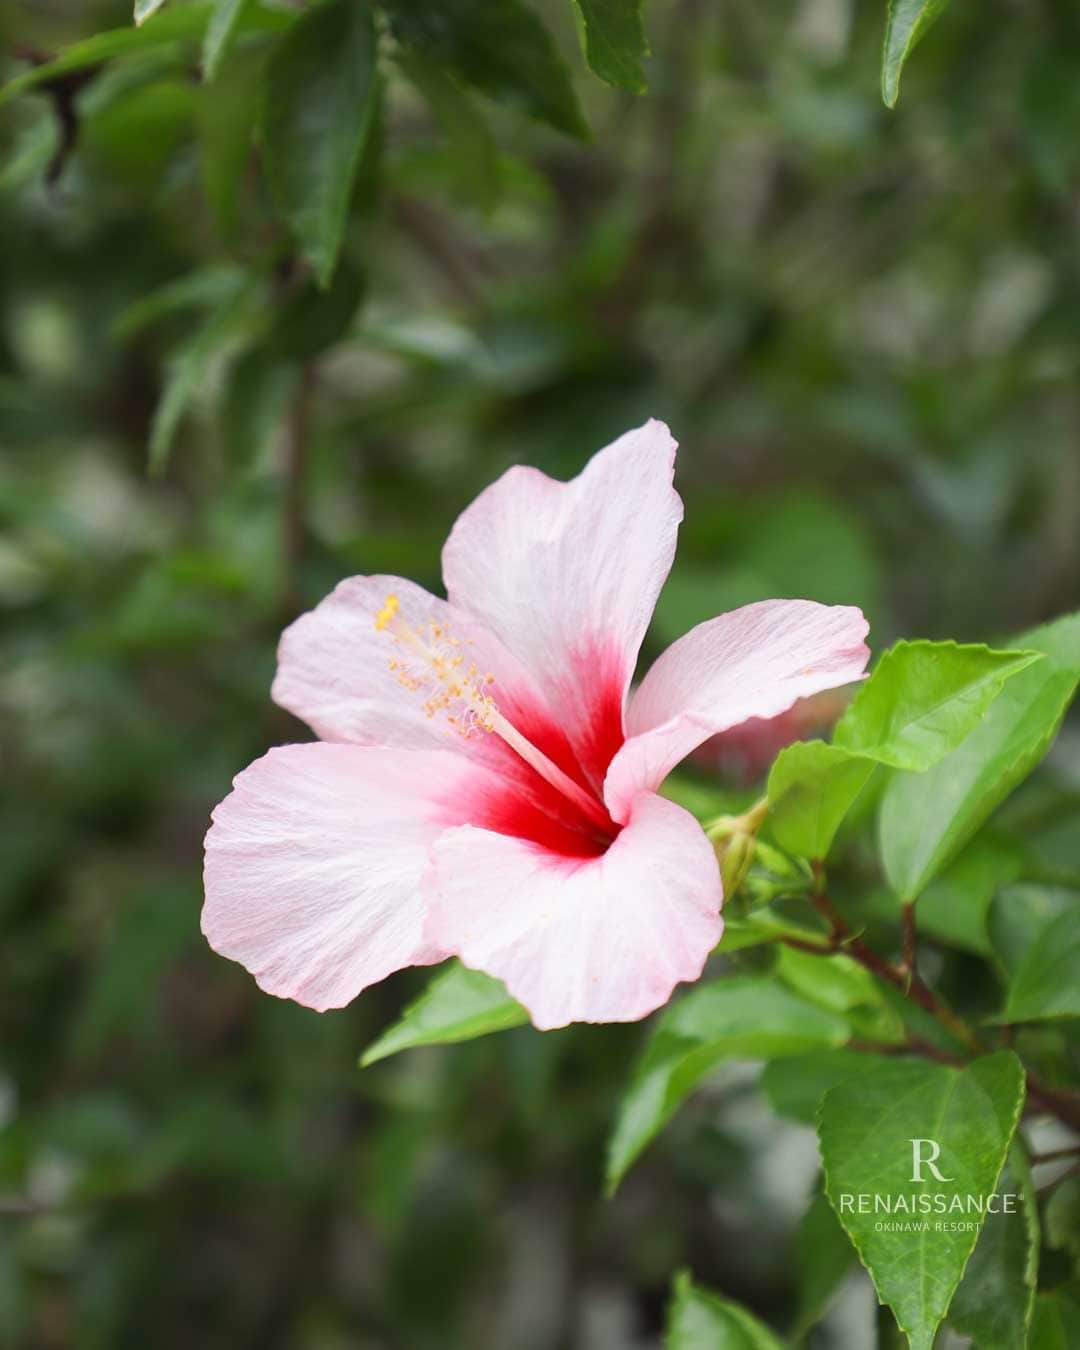 【公式】ルネッサンスリゾートオキナワのインスタグラム：「南国の花として知られるハイビスカス。花の色は赤のイメージですが、実はピンクや白、オレンジや黄色など様々です。5枚目は花の姿が珊瑚に似ている「コーラルハイビスカス」。珍しい形ですよね。敷地内では数種類のハイビスカスが咲いています。ぜひ探してみてくださいね。  #ルネッサンスリゾートオキナワ #恩納村 #沖縄 #沖縄リゾート #ハイビスカス #renaissanceokinawaresort #okinawa #resort #renhotels」